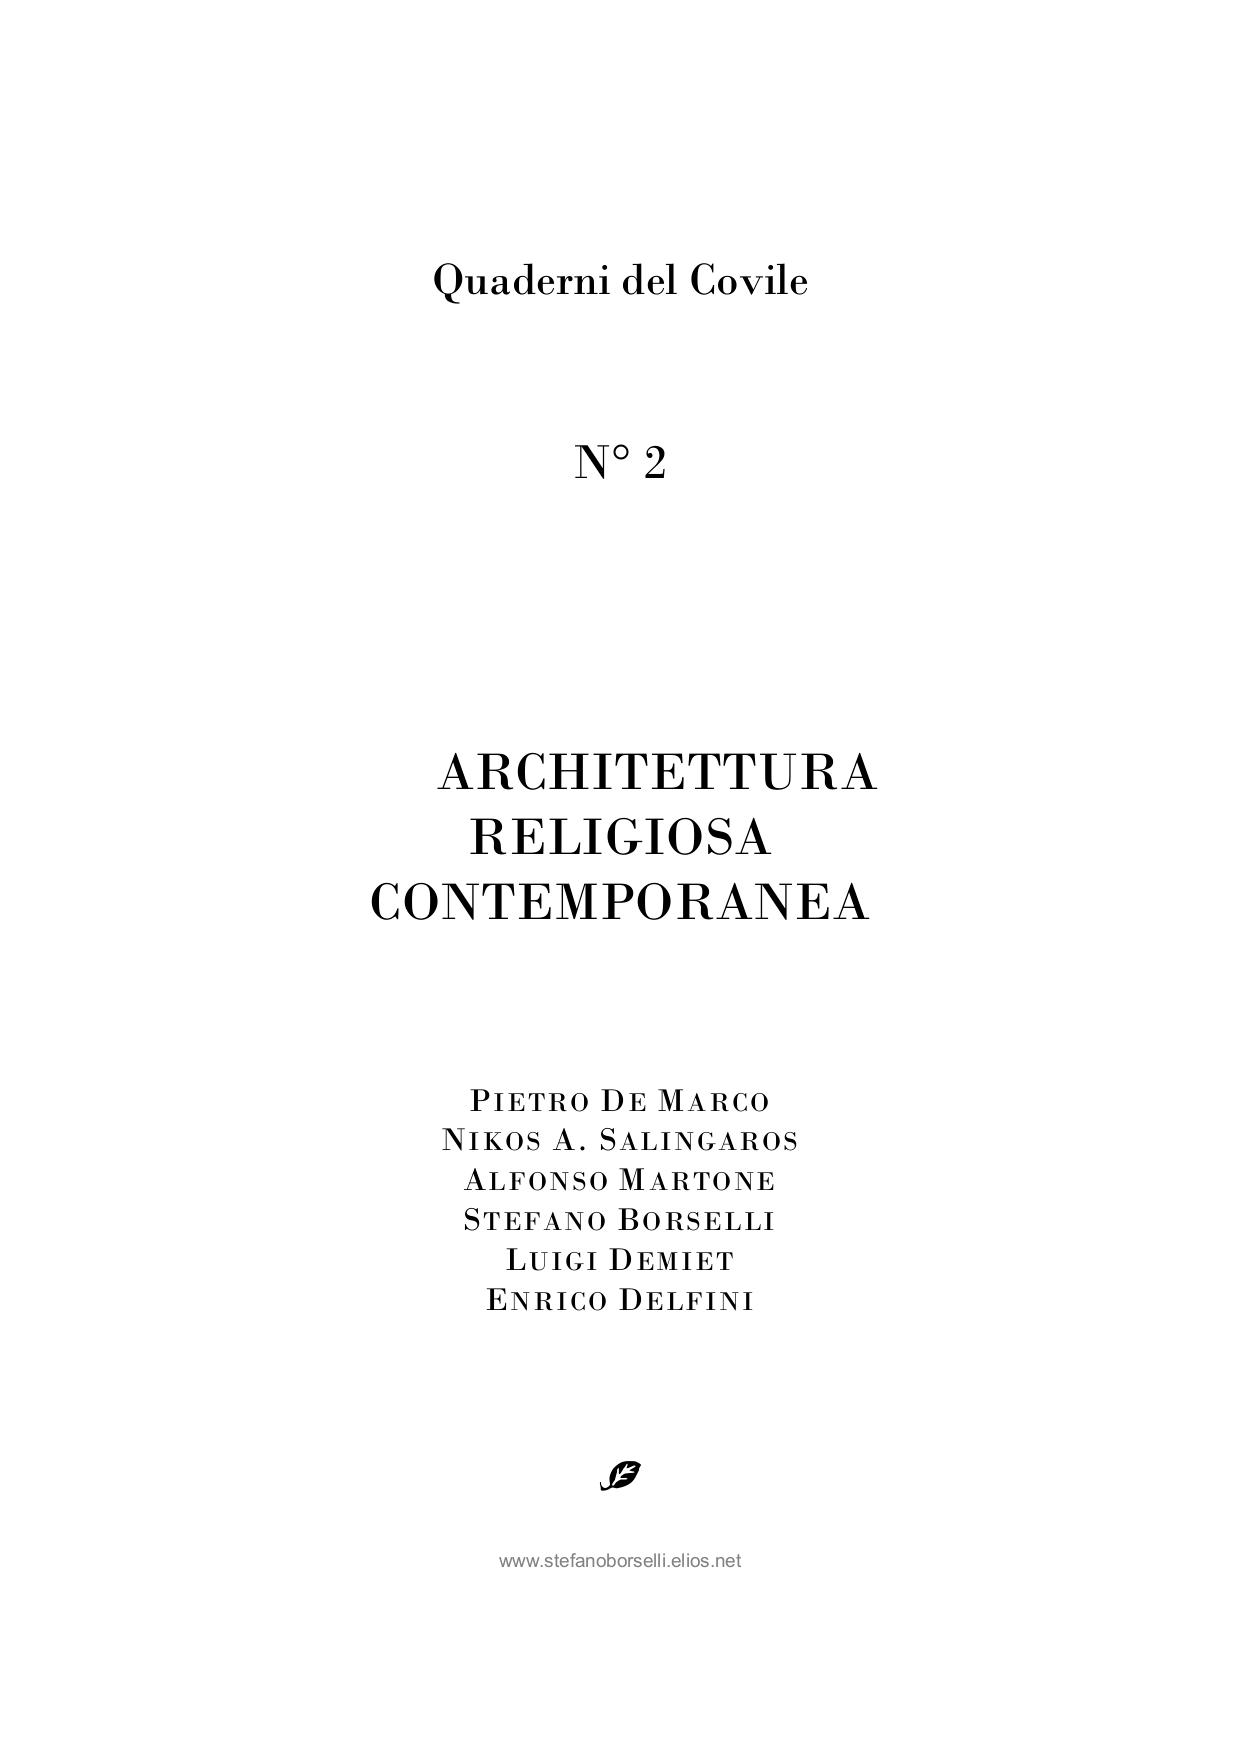 Copertina di Architettura religiosa contemporanea.